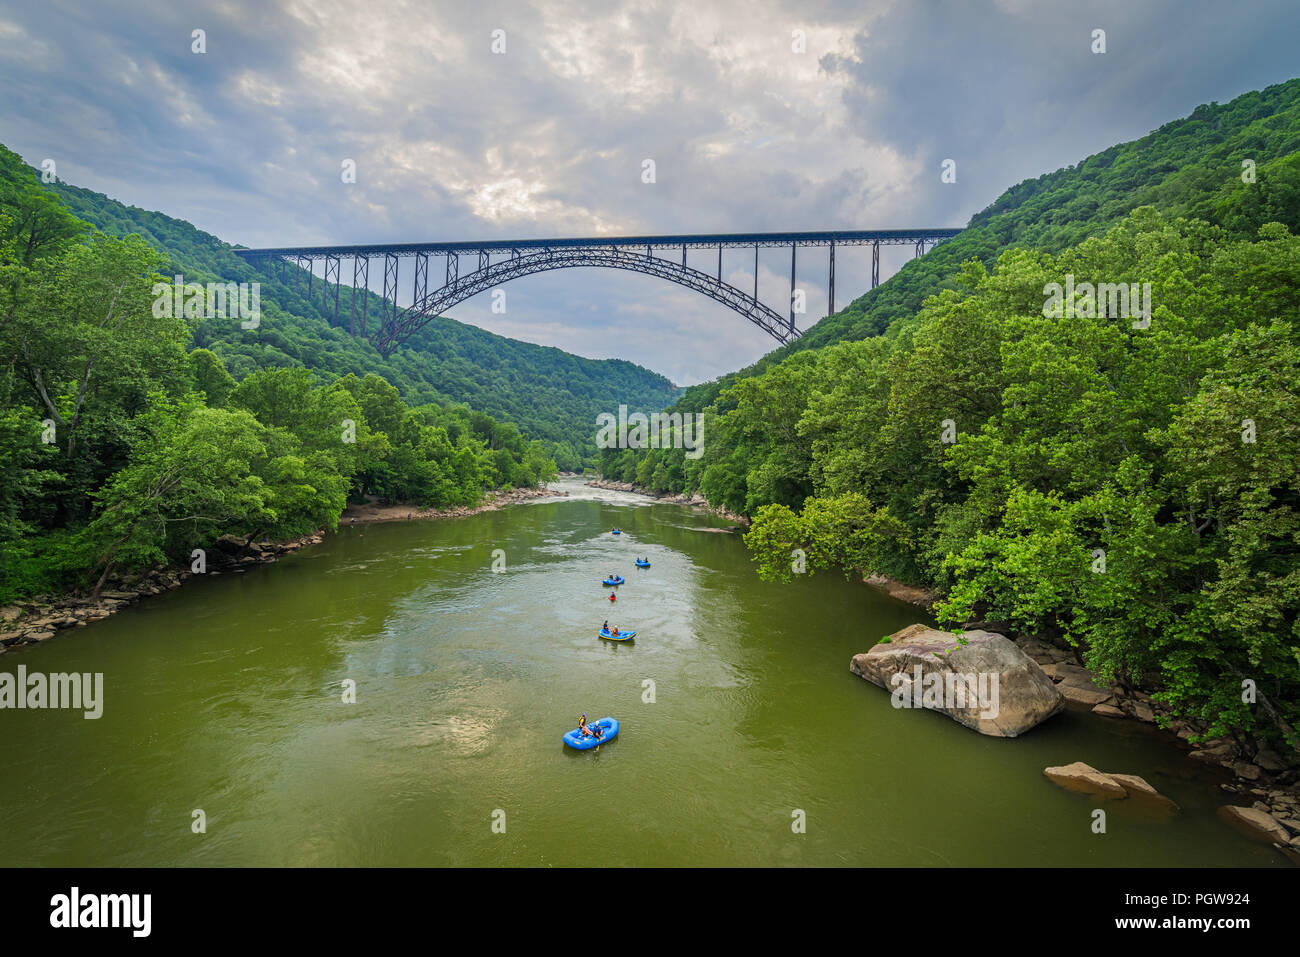 Acqua bianco rafters flottazione verso il basso il nuovo River Gorge in West Virginia sotto il grande arco in acciaio ponte. Foto Stock